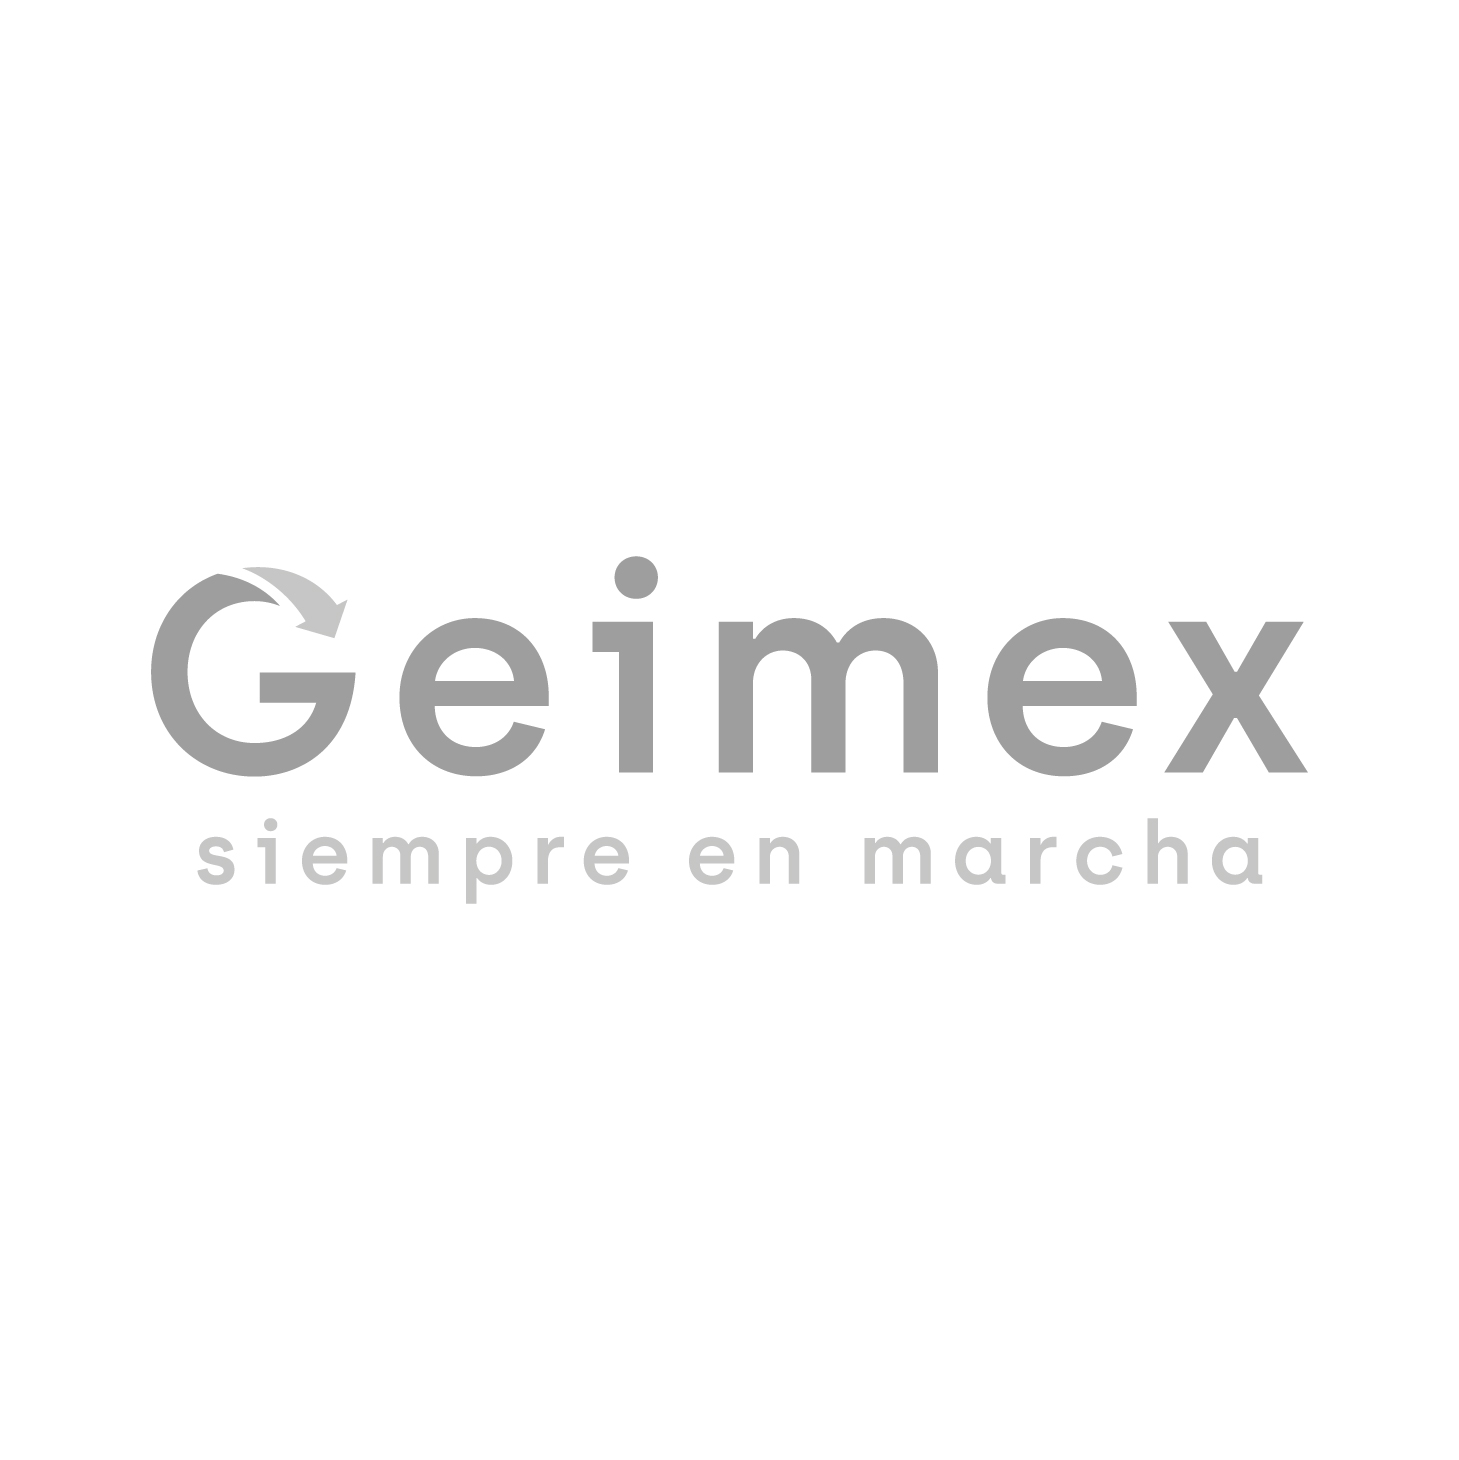 geimex-a